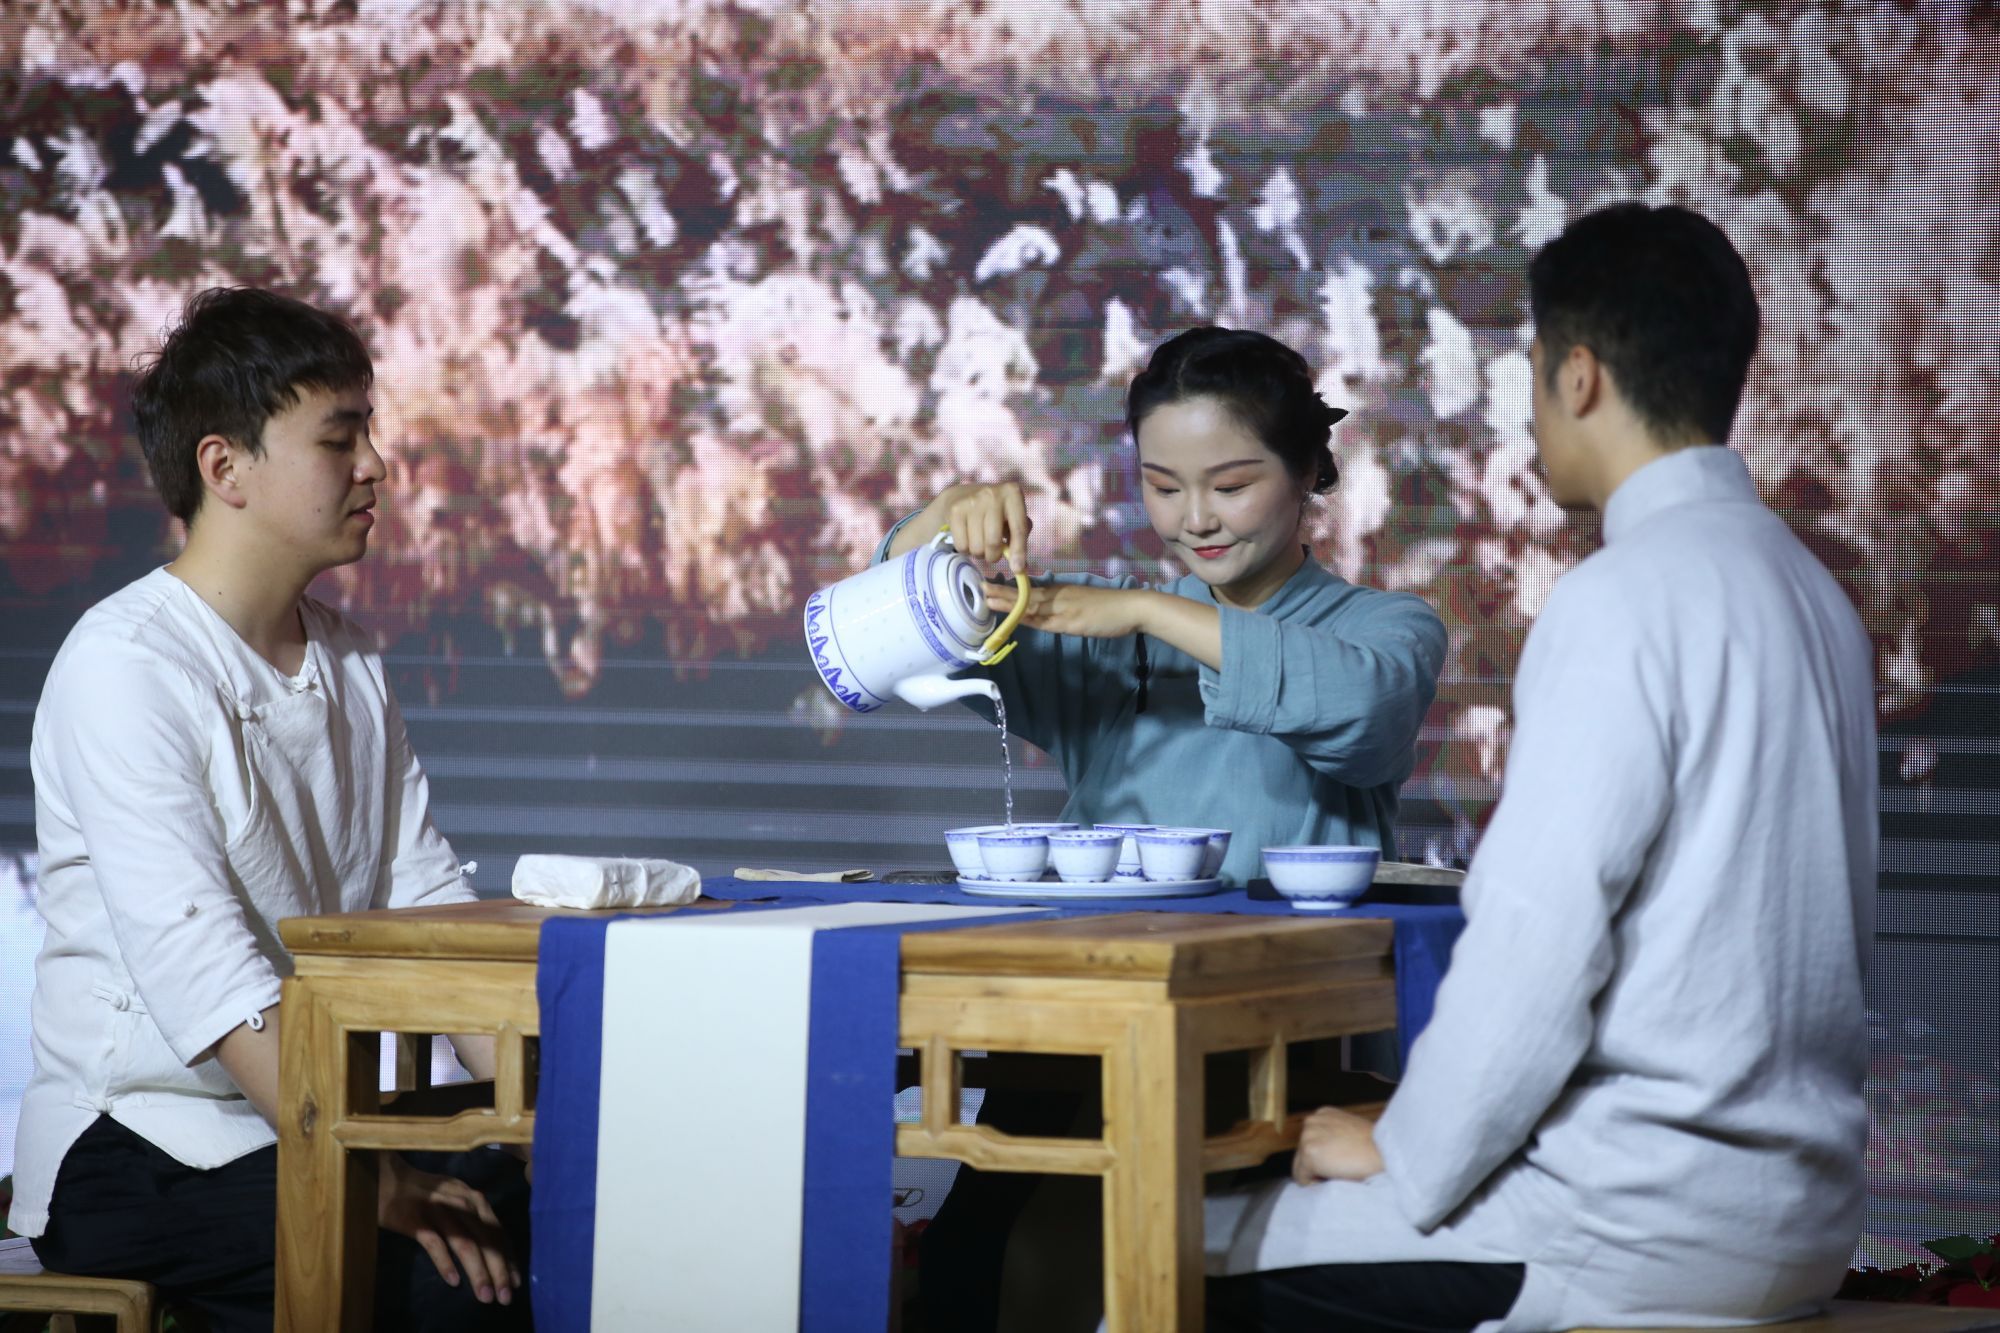 展现中国茶文化 “马连道杯”全国茶艺表演大赛决赛举行